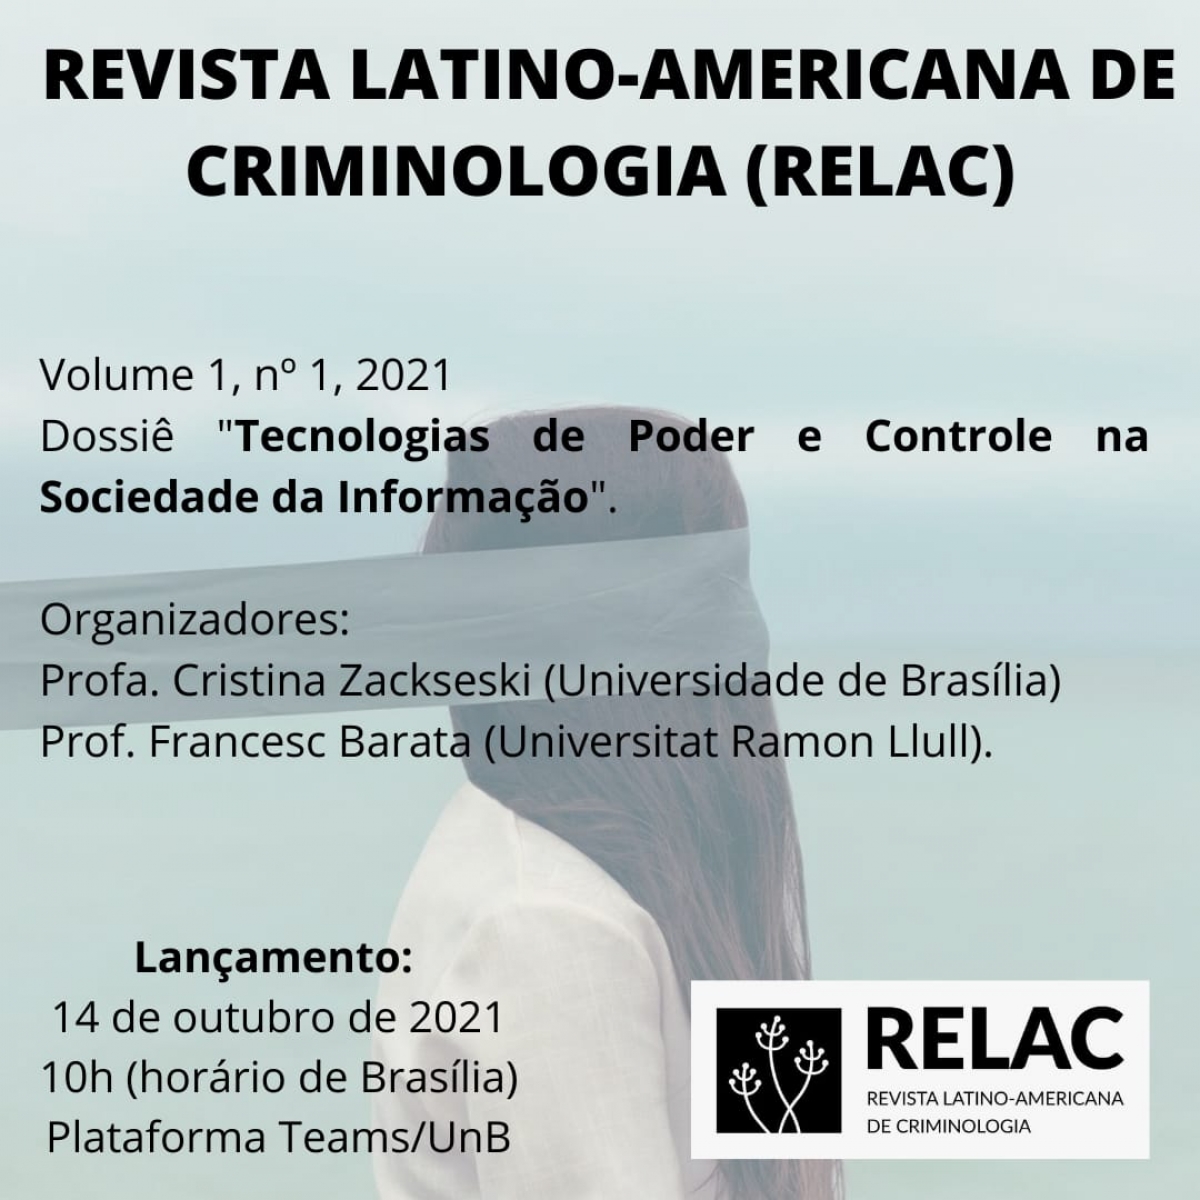 Lançamento da Revista Latino-americana de Criminologia (RELAC)